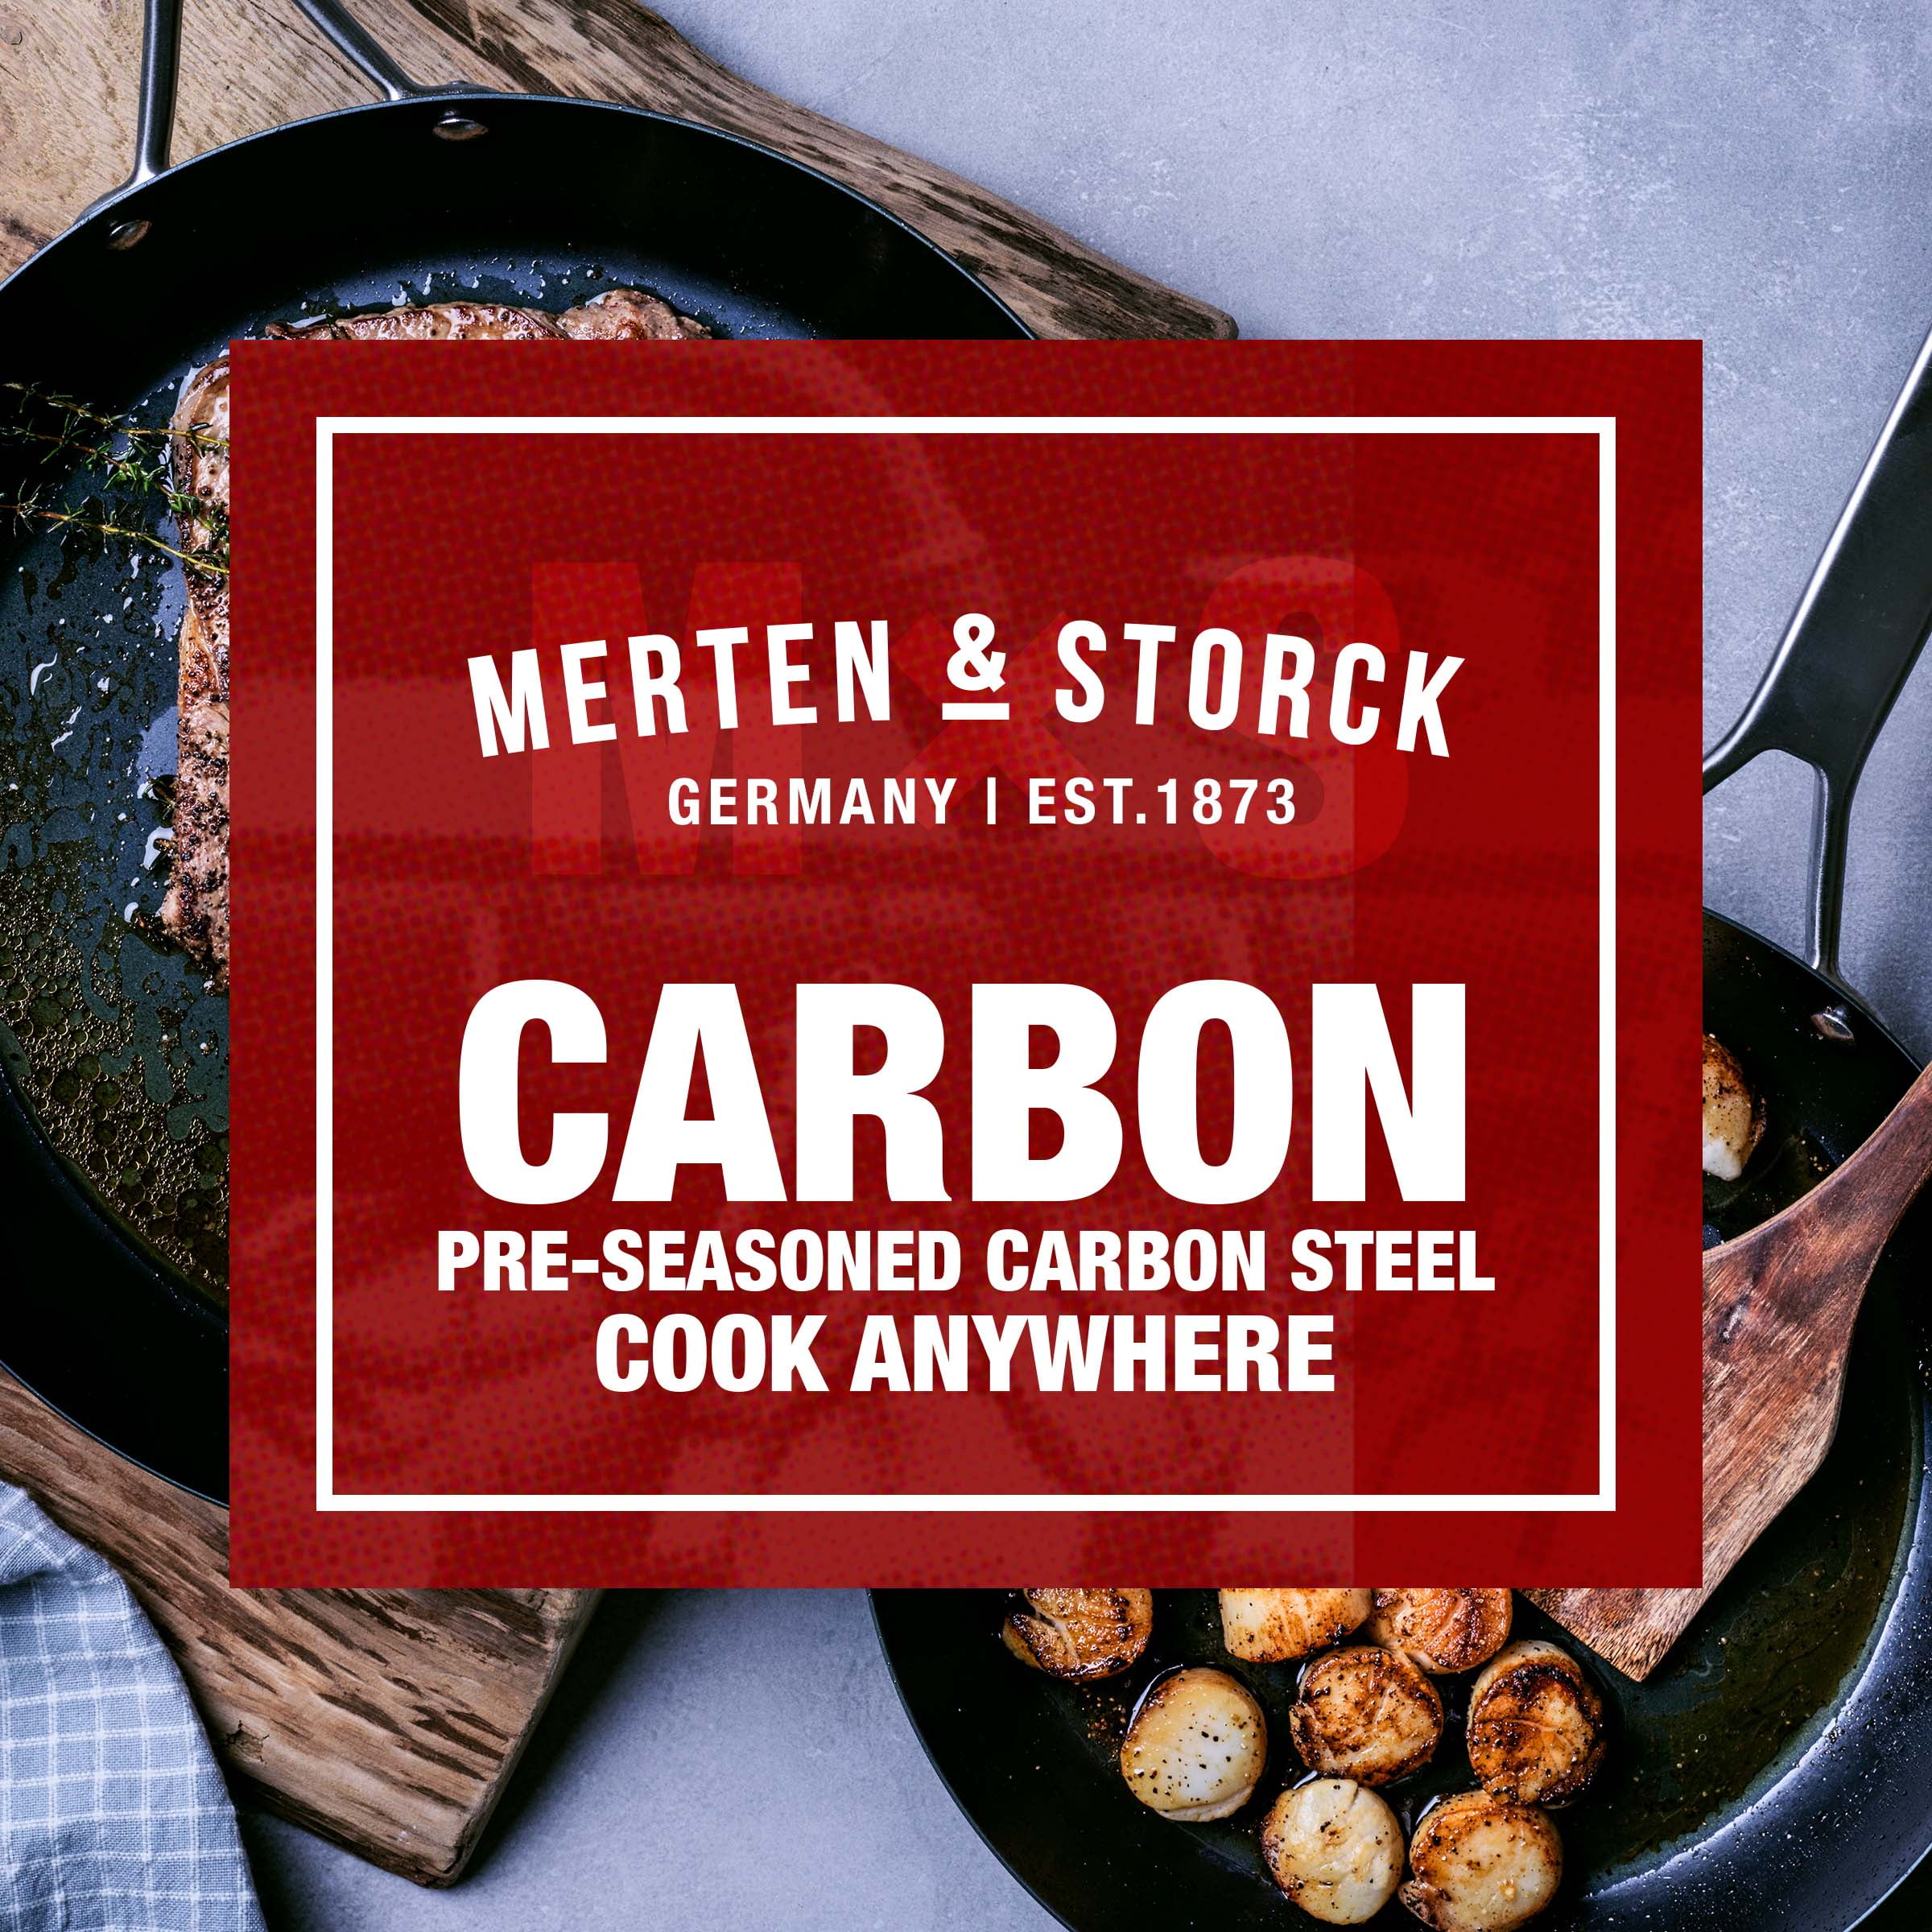 Merten & Storck Pre-Seasoned Carbon Steel Black Frying Pan, 12-inch